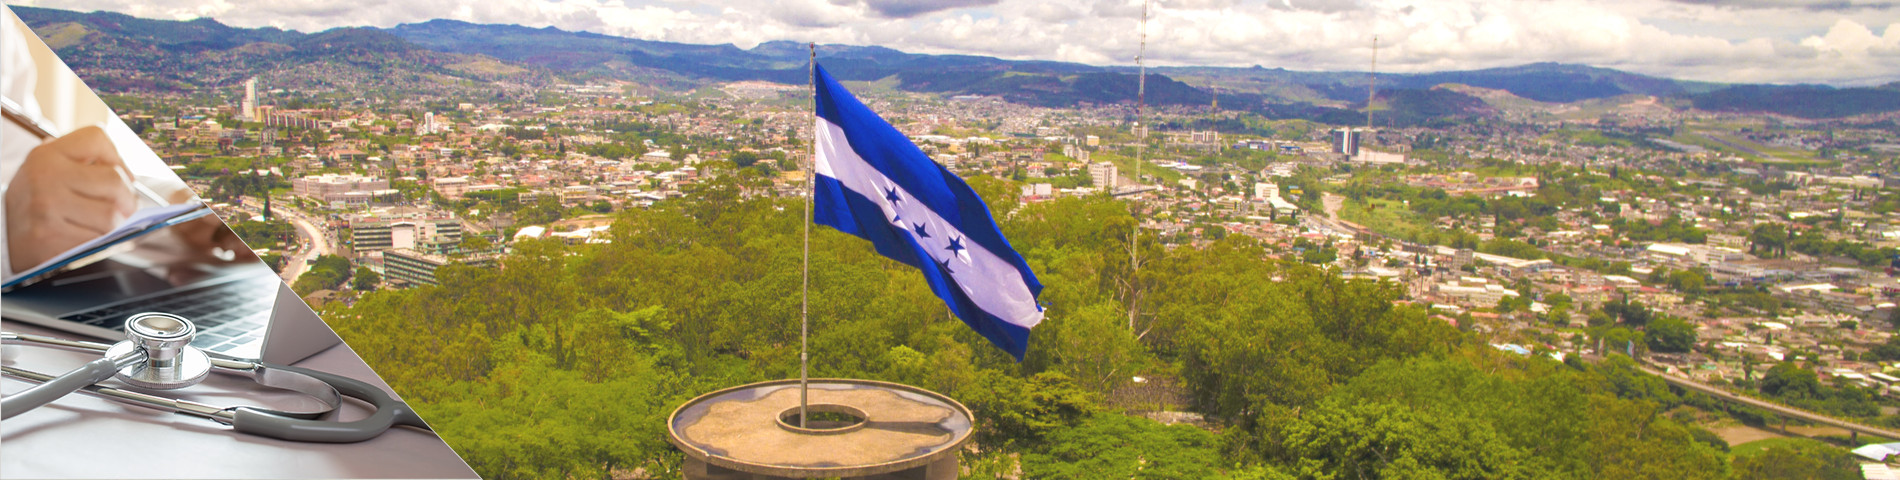 Honduras - Espanhol para Médicos e Enfermeiros